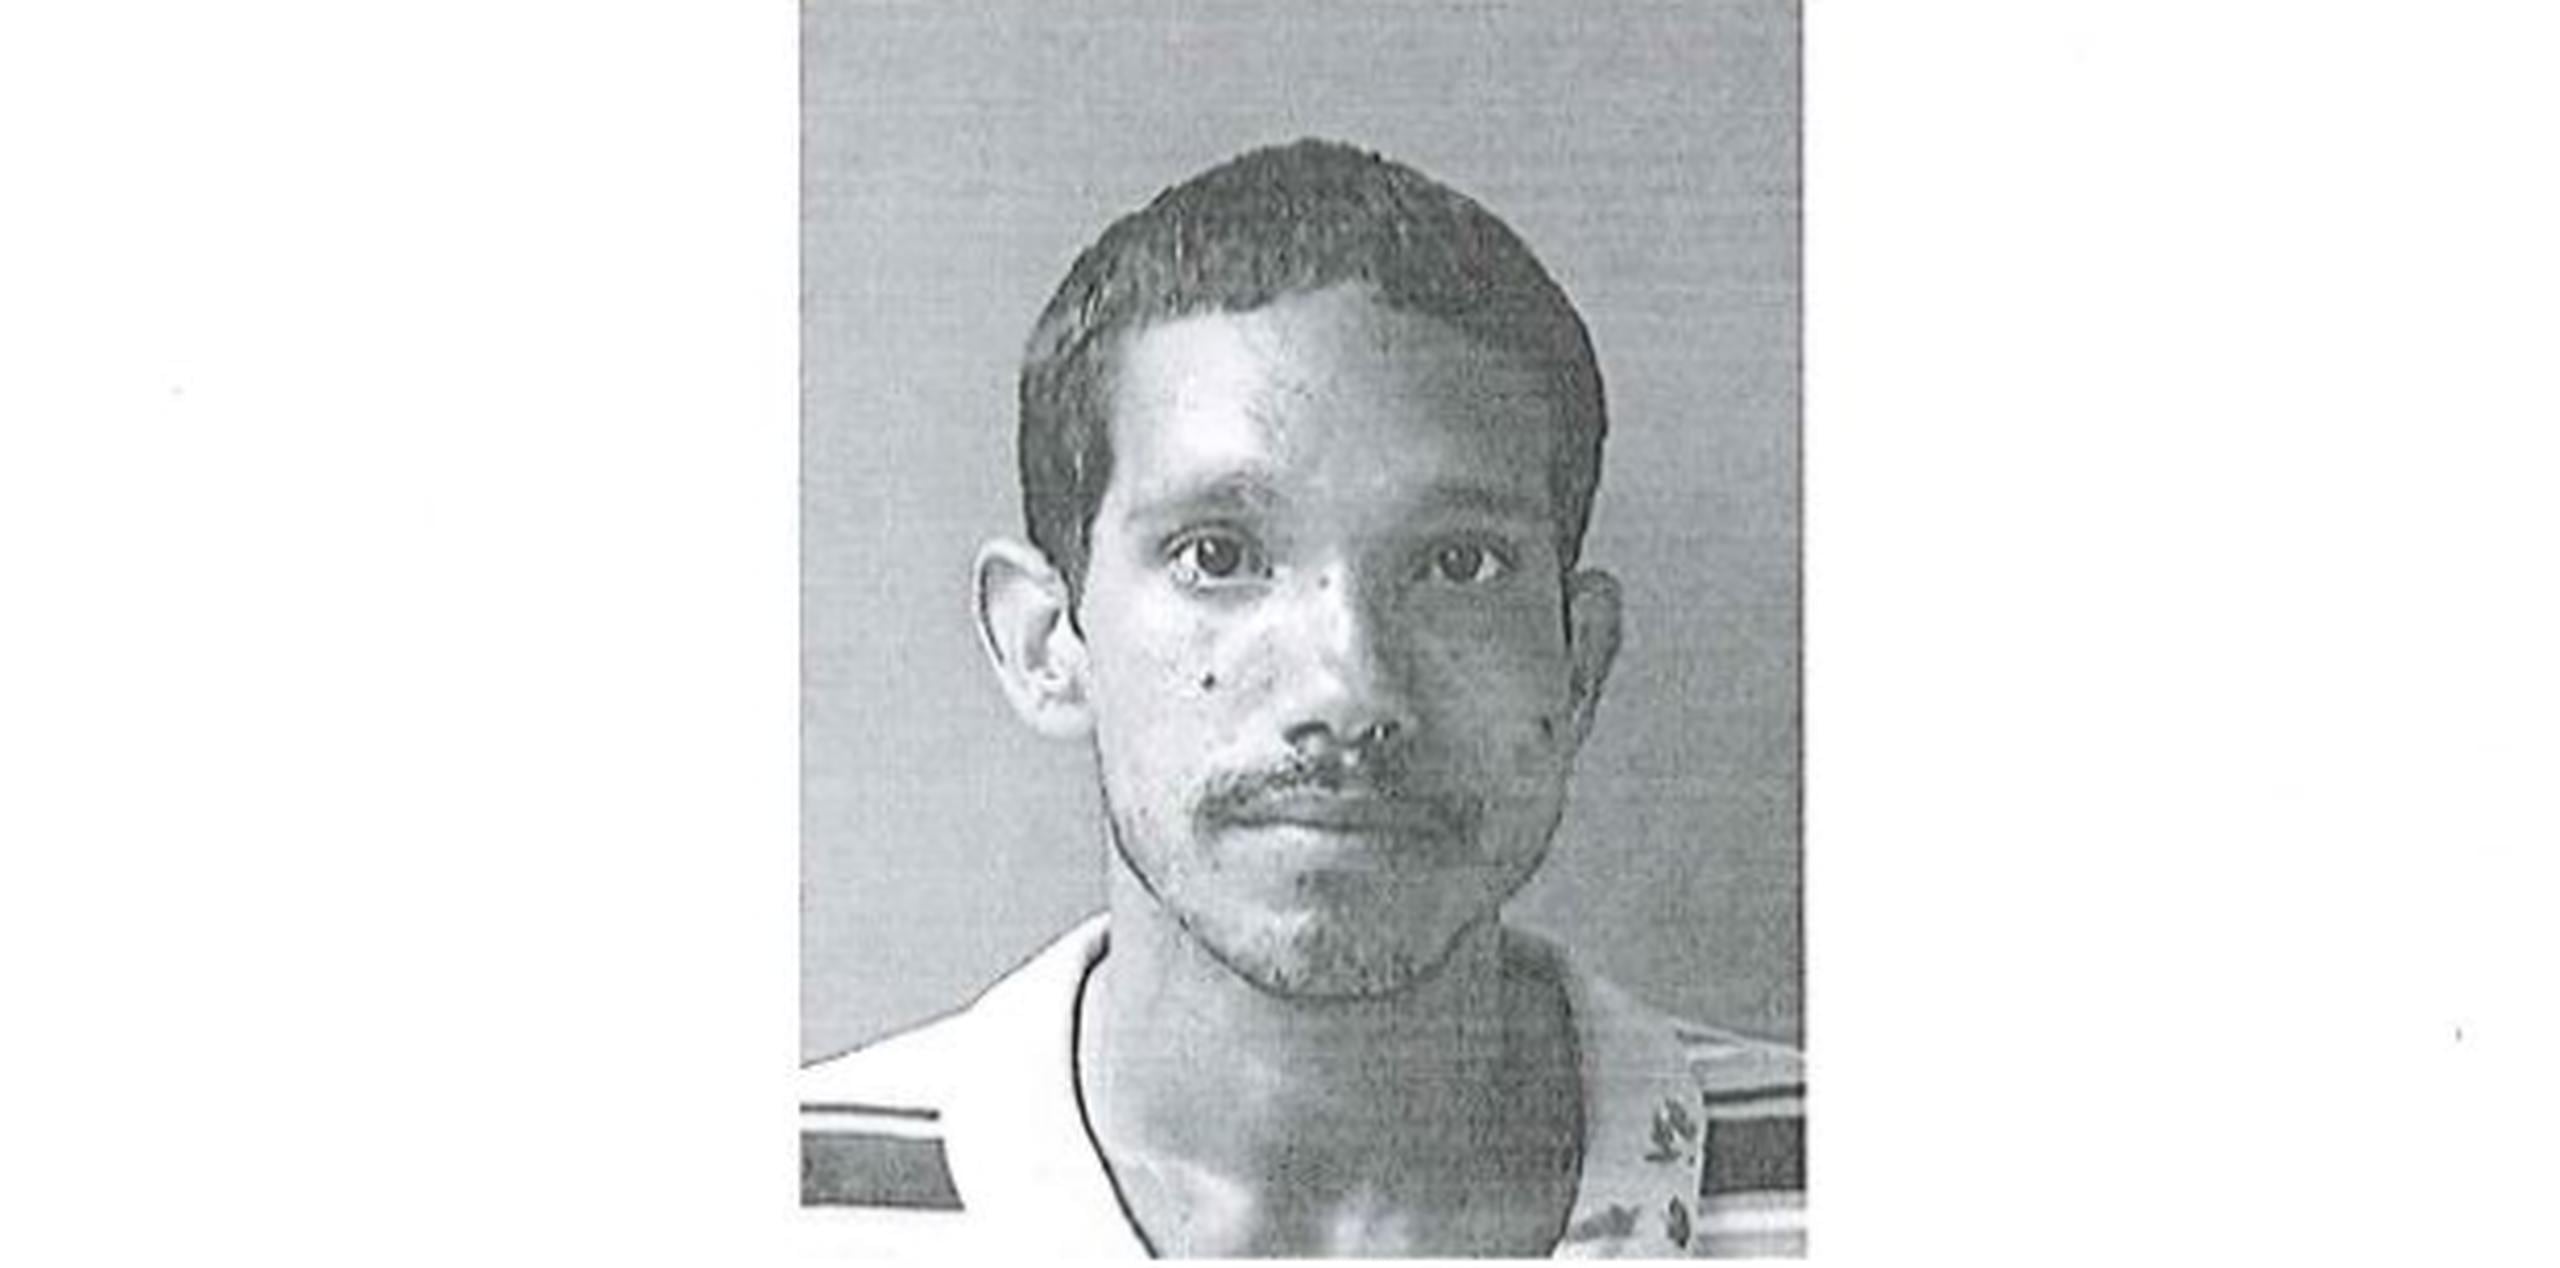 El individuo, que es buscado por las autoridades para interrogarlo, fue identificado como Ángel E. Figueroa Morales. (Foto/Policía de Puerto Rico)